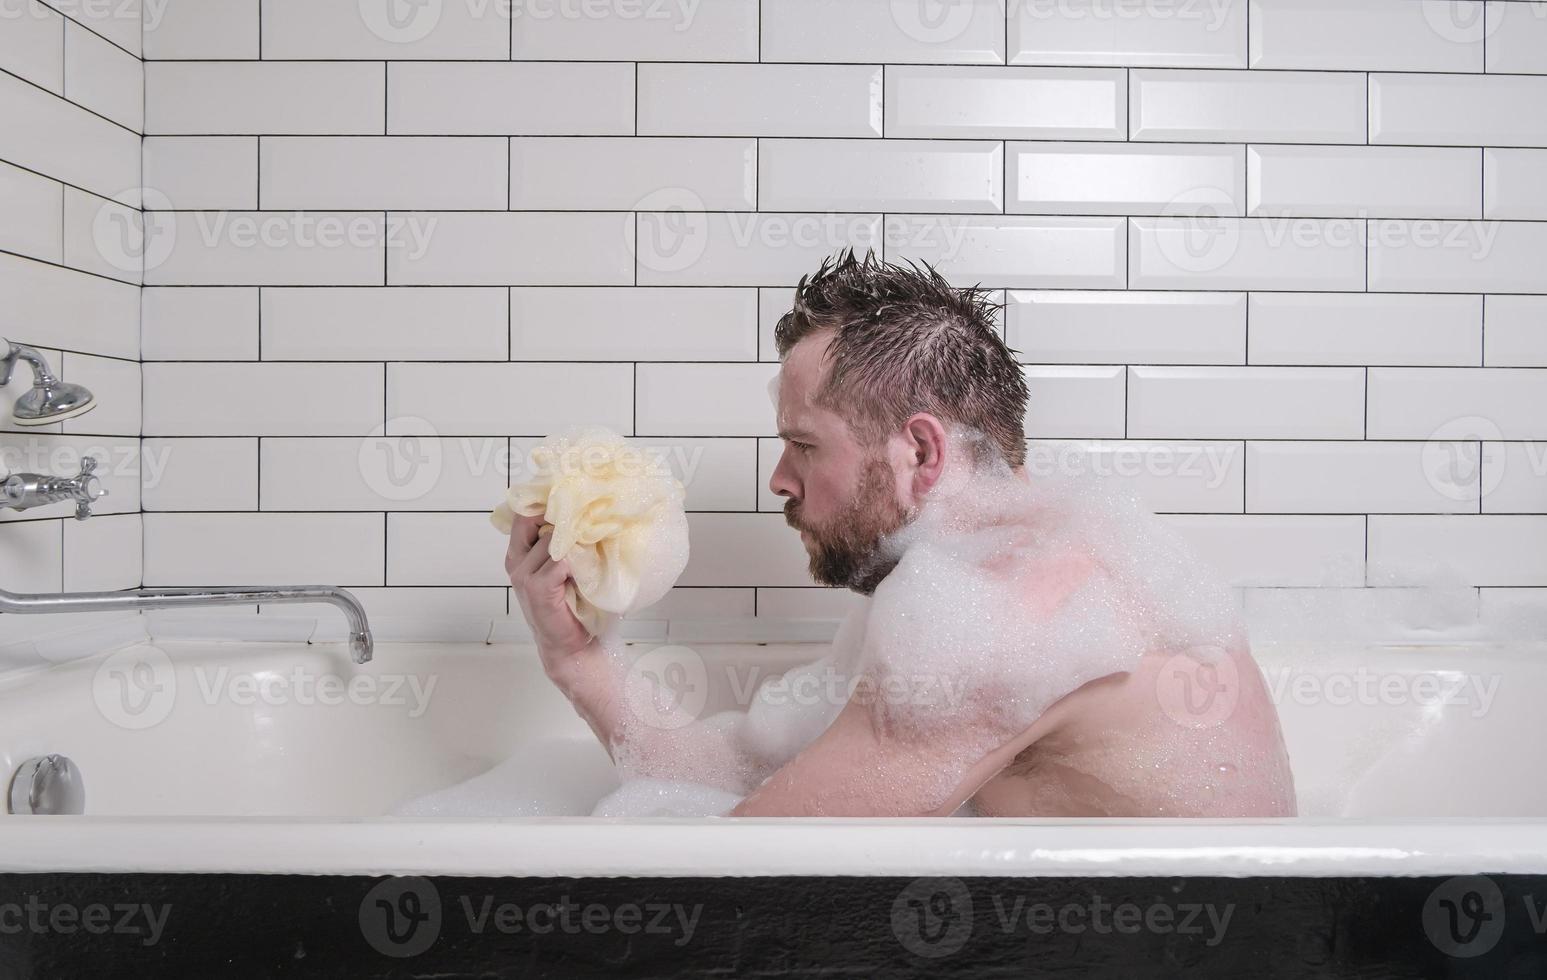 verdrietig Mens baadt in een bad met weelderig zeep zeepsop, hij houdt een spons in zijn handen en looks bedachtzaam. foto